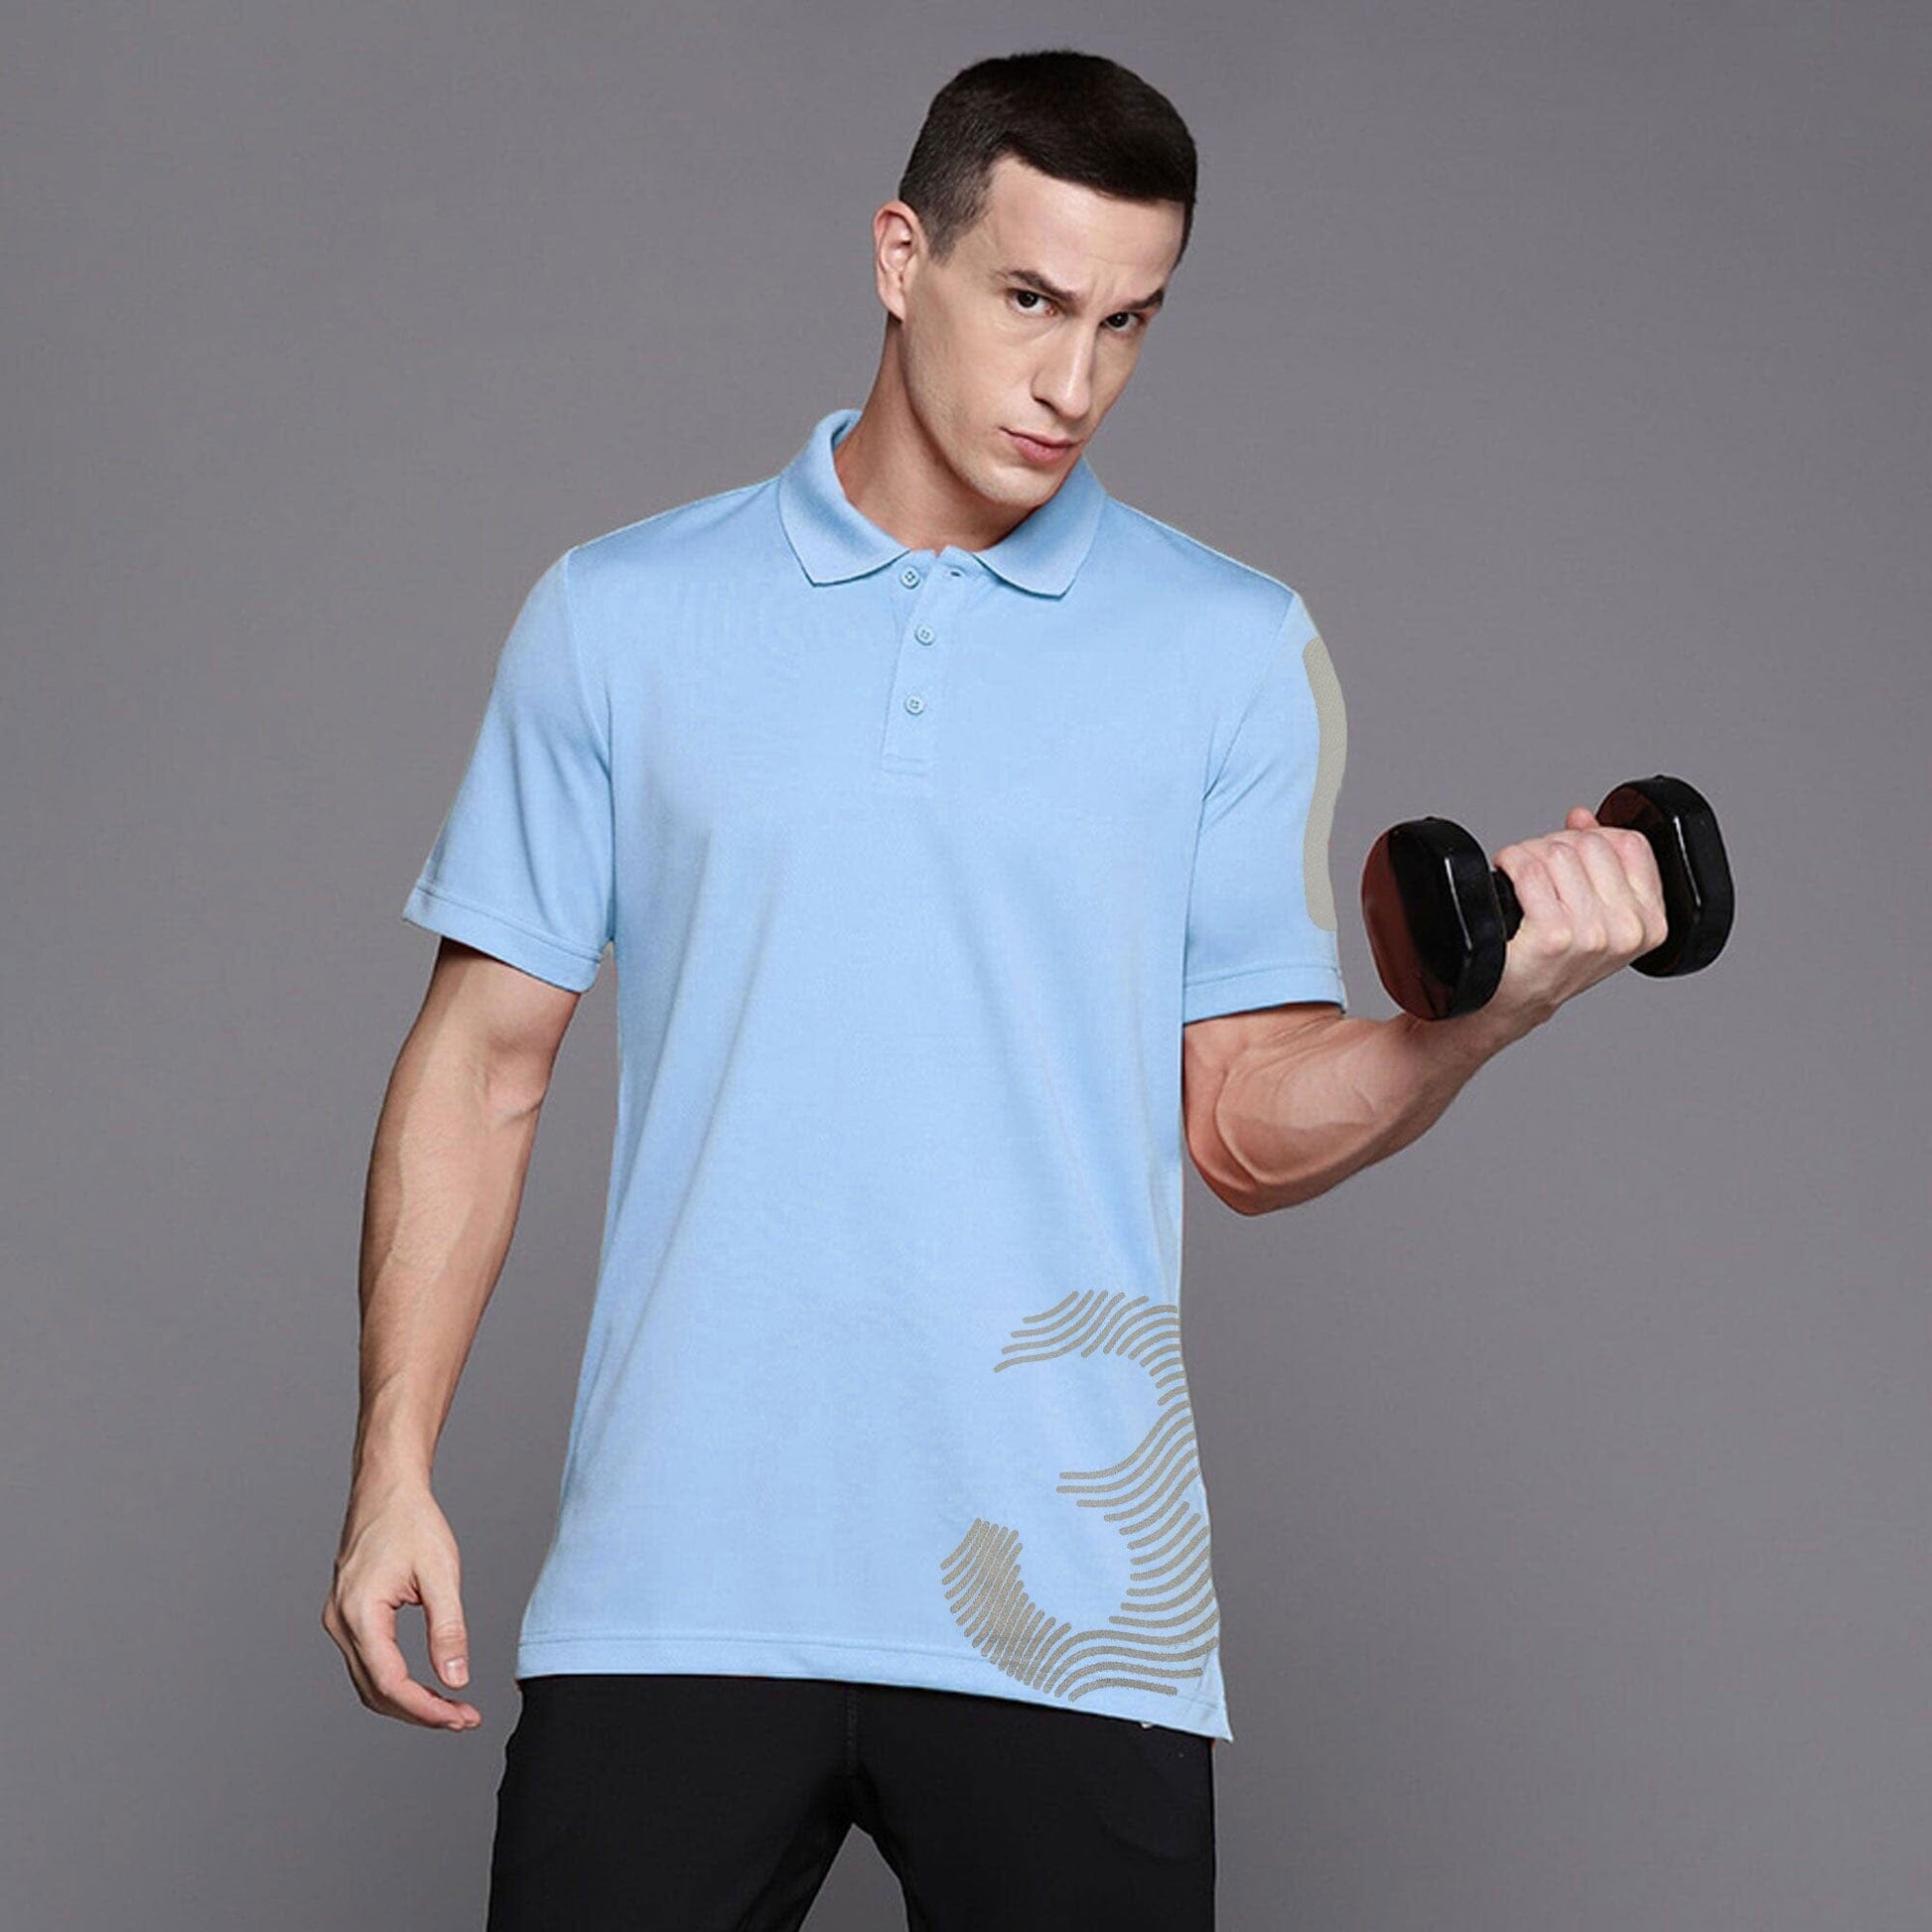 Polo Republica Men's 3 Reflective Printed Moisture Wicking Activewear Polo Shirt Men's Polo Shirt Polo Republica Sky S 